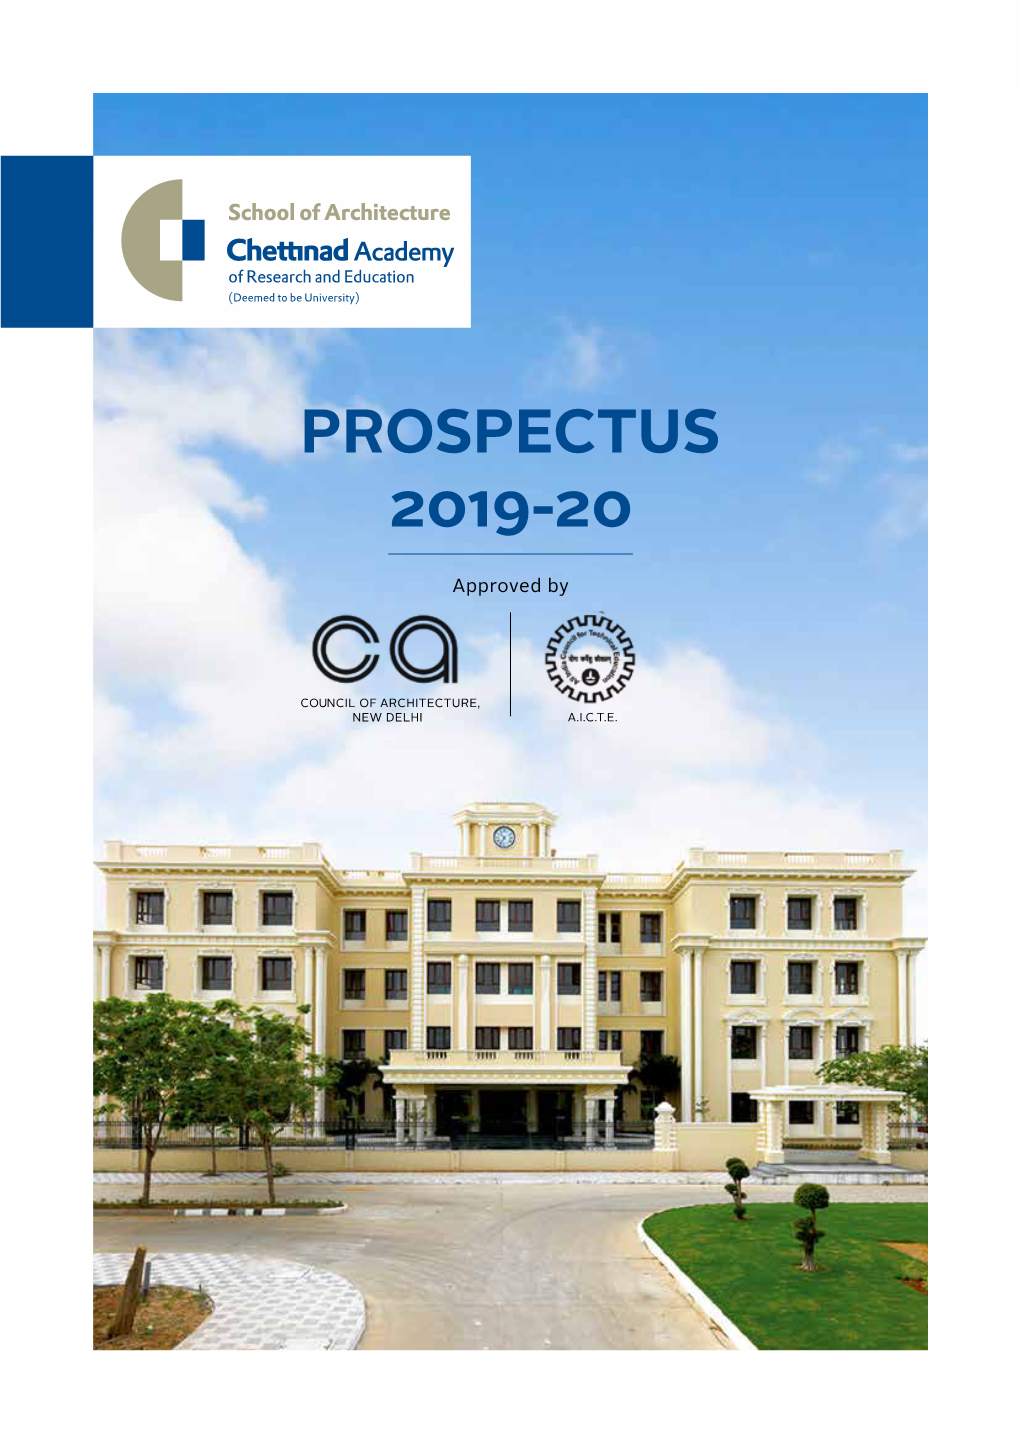 Prospectus 2019-20